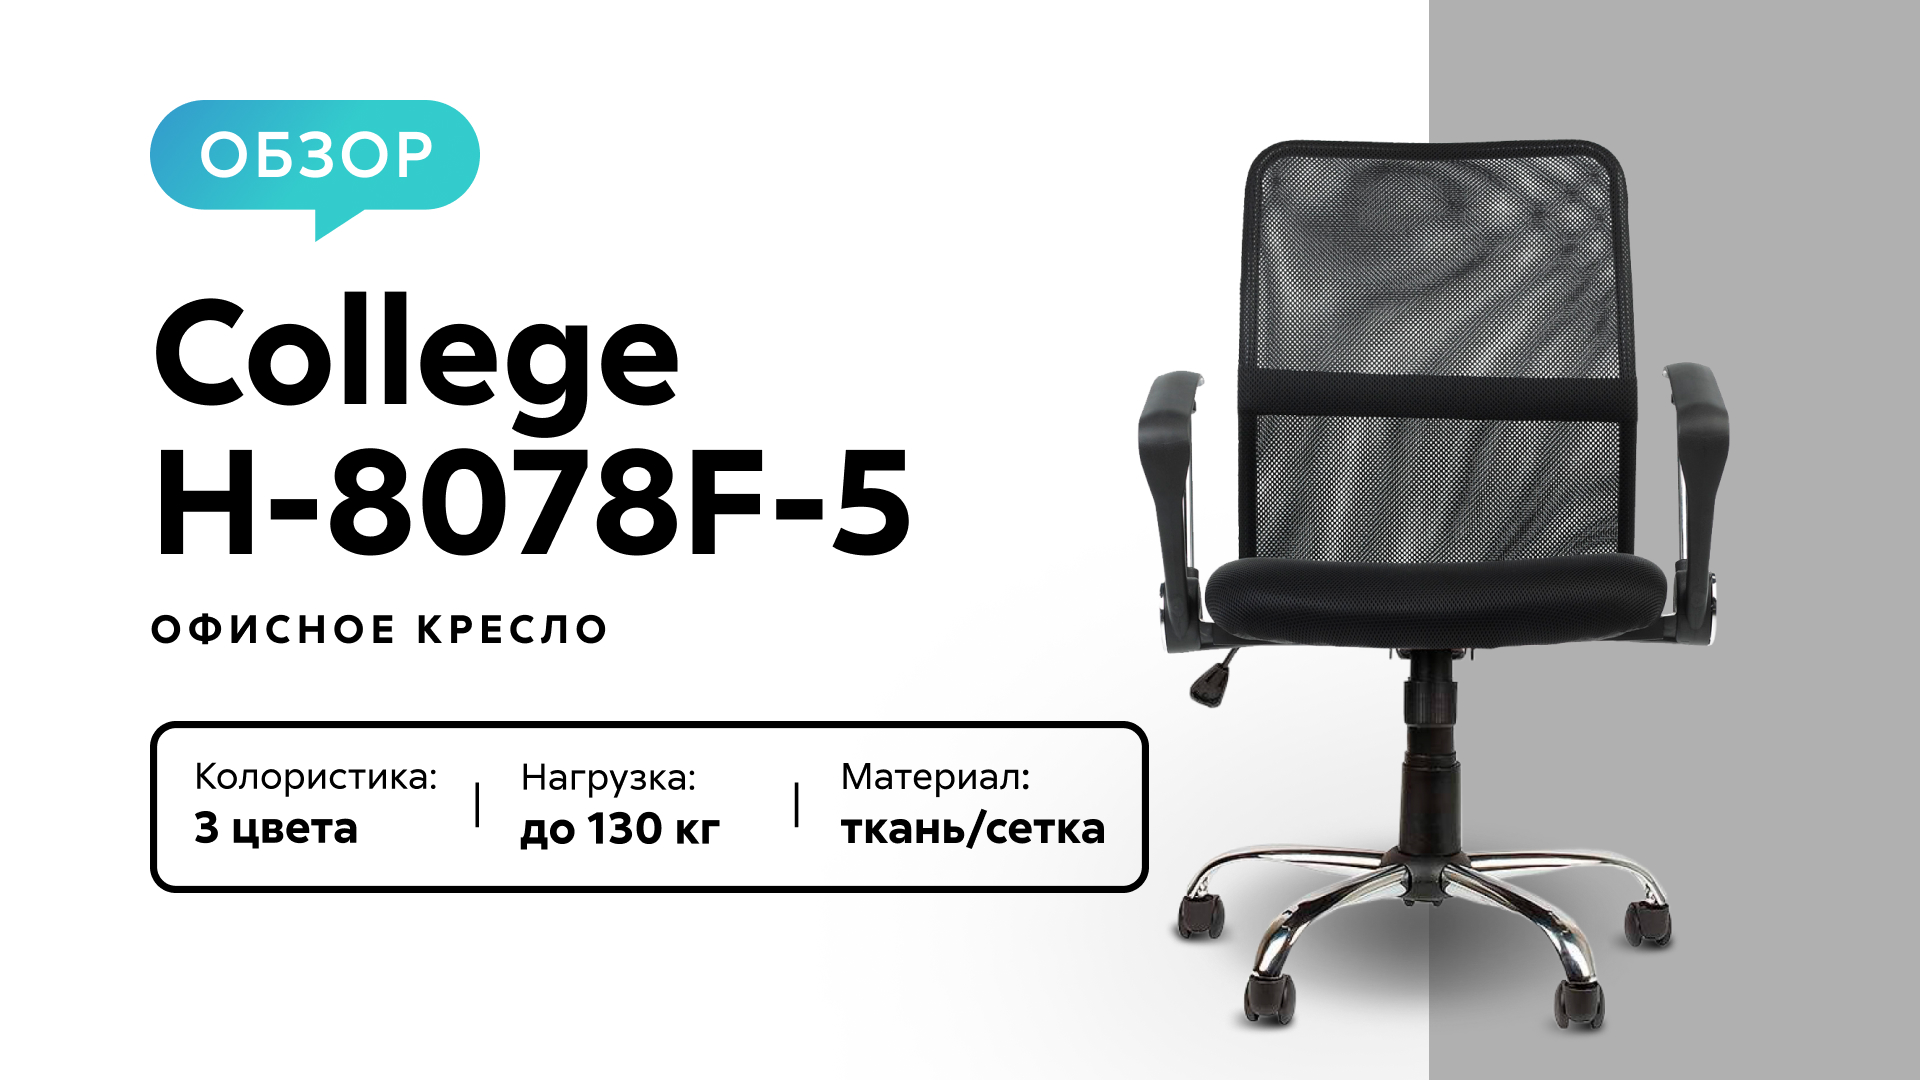 Обзор офисного кресла College H-8078F-5